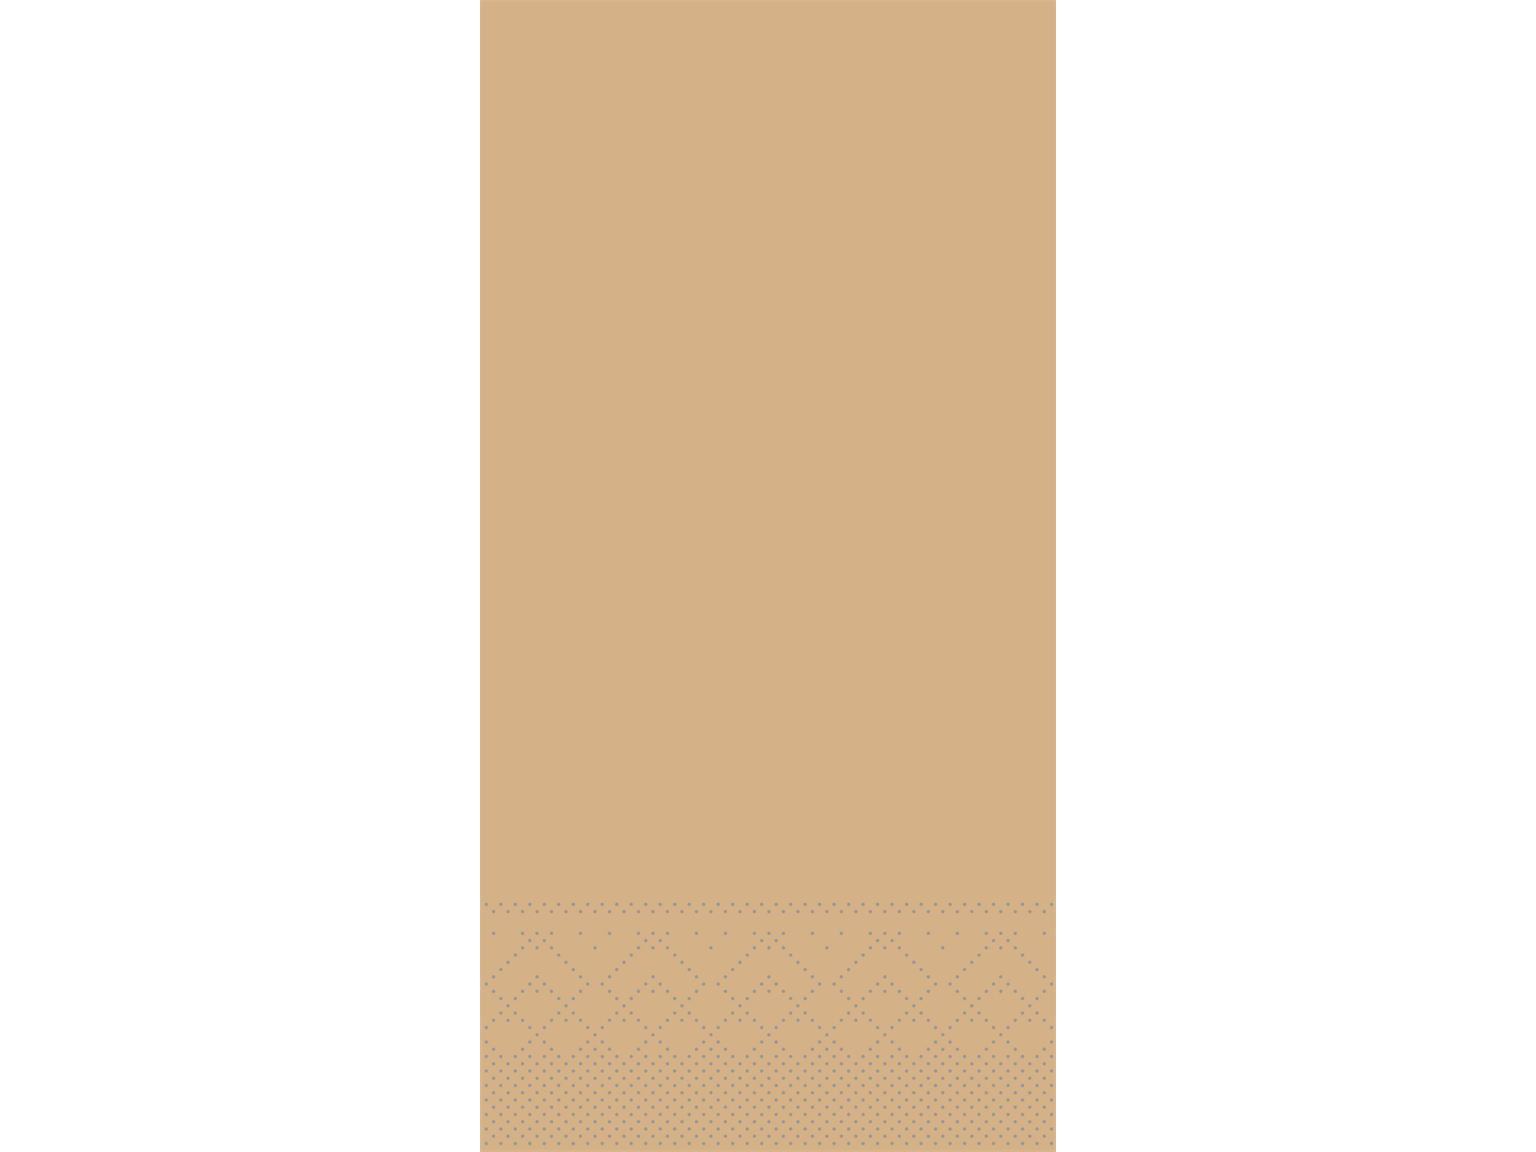 SERVIETTEN TISSUE  33 x 33 cm, 1/8 Falz, Tissue, einfarbig